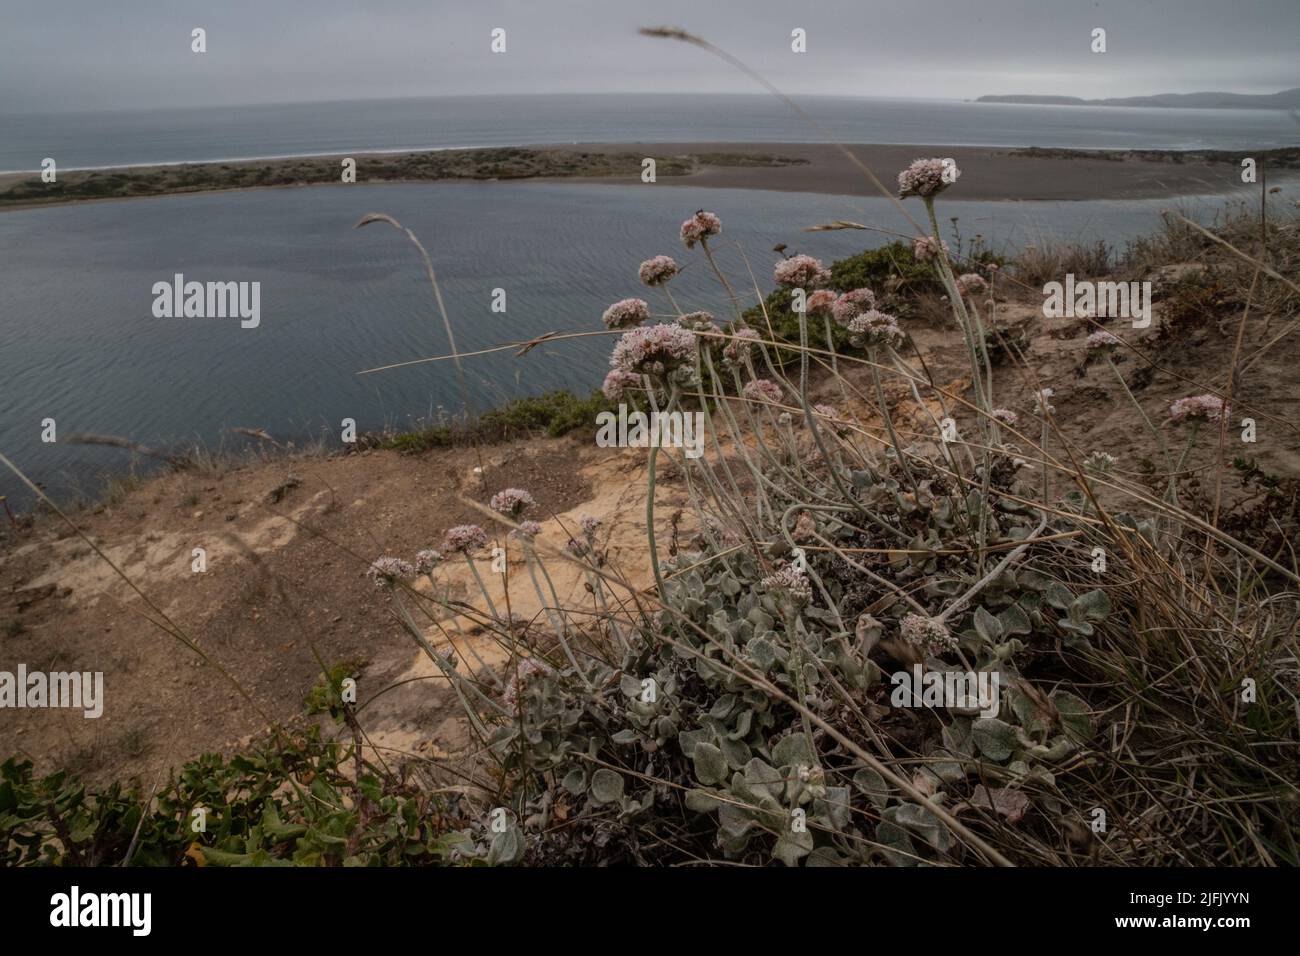 Costa o grano saraceno marino (Eriogonum latifolium) che cresce sulle scogliere costiere che si affacciano sull'oceano Pacifico a Point Reyes Seashore in California. Foto Stock